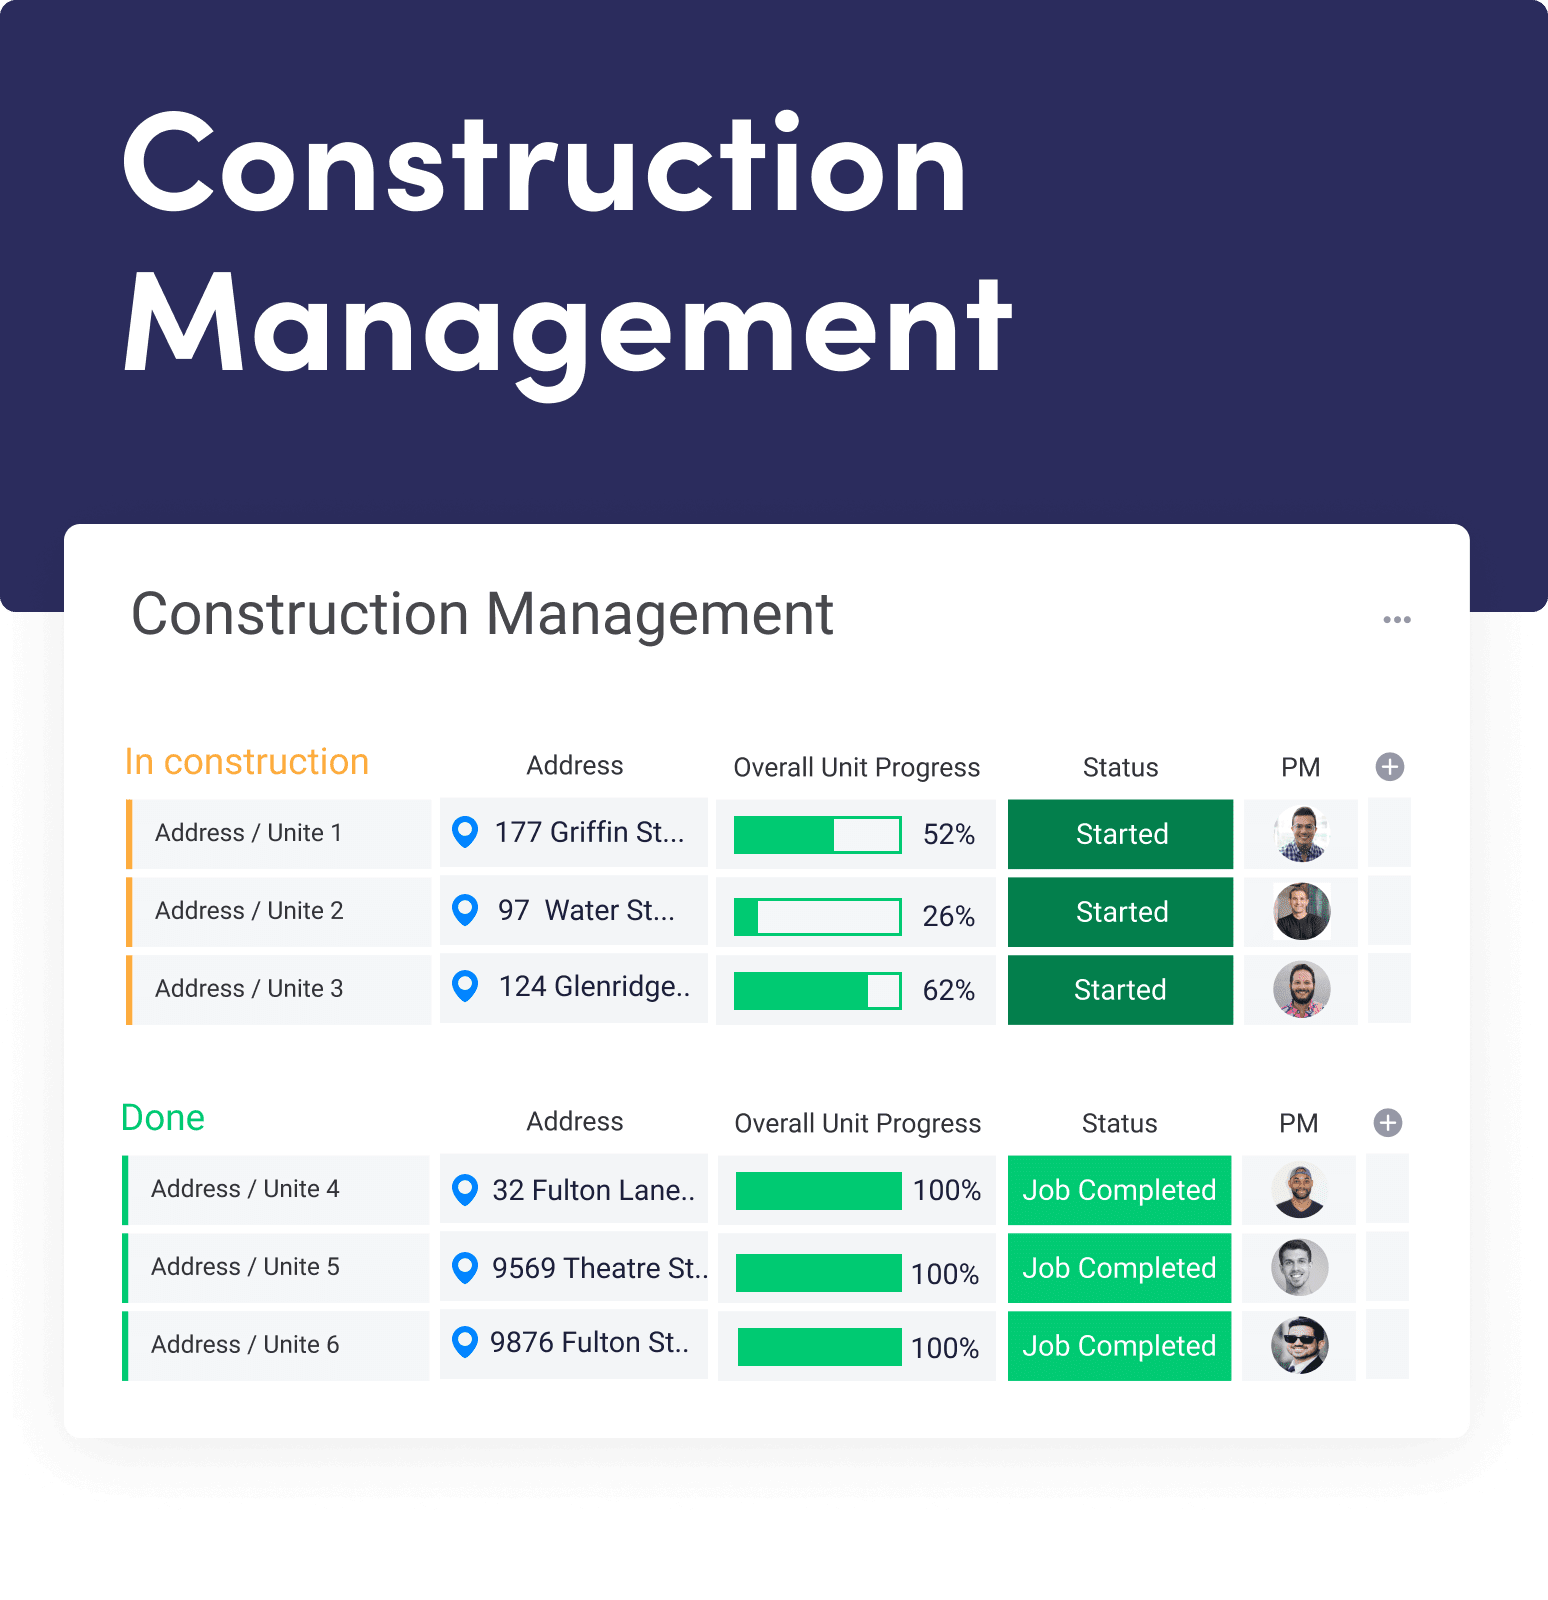 Constructionmanagement